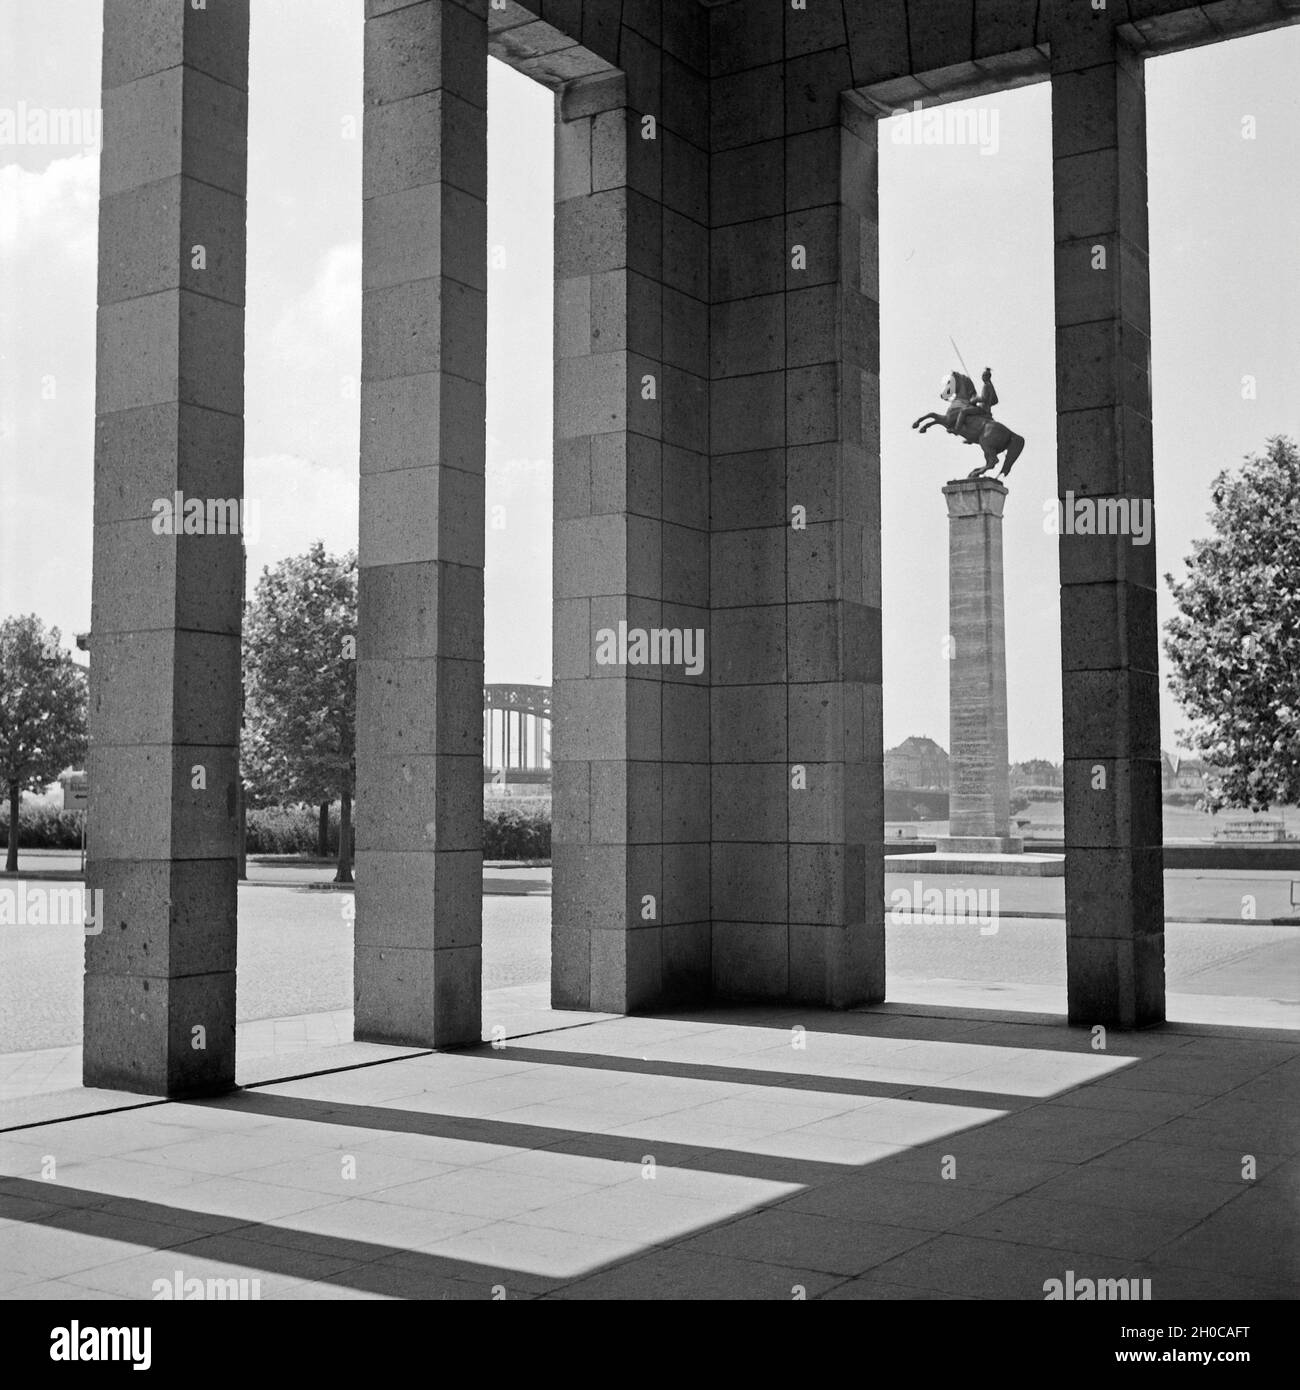 Das Ulanendenkmal im Ehrenhof am Rhein di Düsseldorf, Deutschland 1930er Jahre. Monumento Uhlan presso la corte d'onore nei pressi del fiume Reno a Duesseldorf, Germania 1930s. Foto Stock